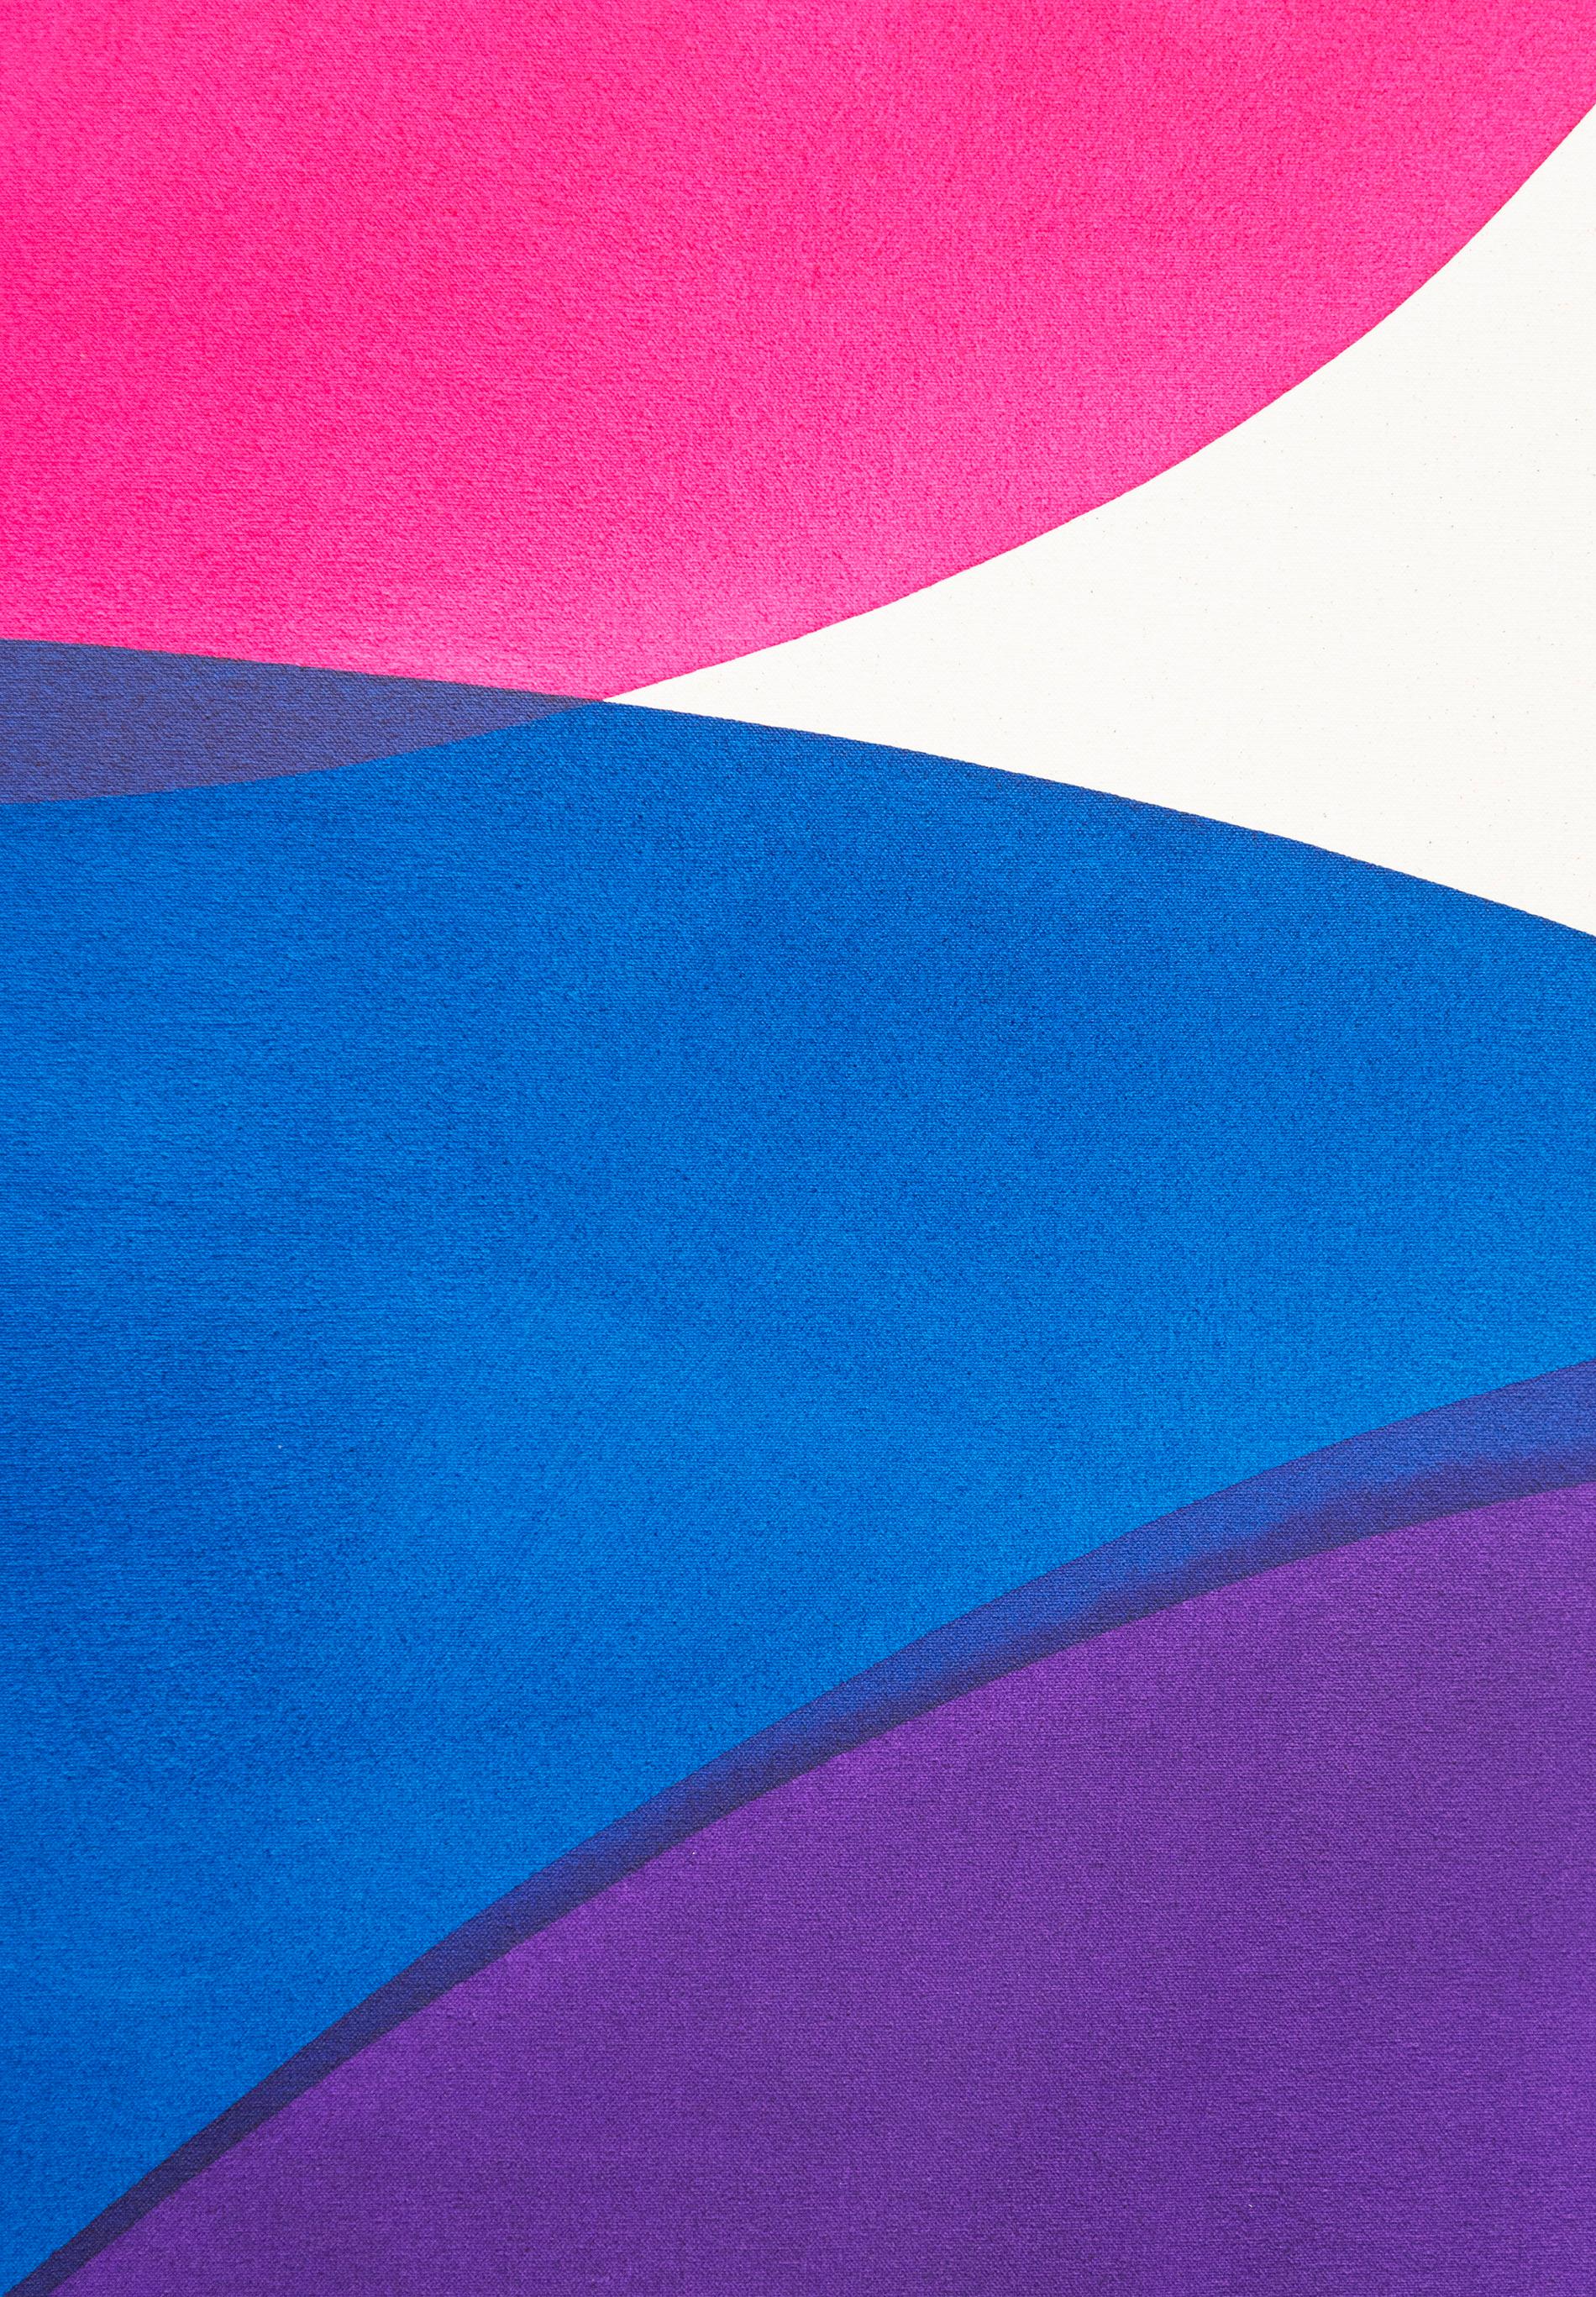 Ein kurzer Aufenthalt Nr. 4 – leuchtende Farben, abstrakt, minimalistisch, Acryl auf Leinwand 4